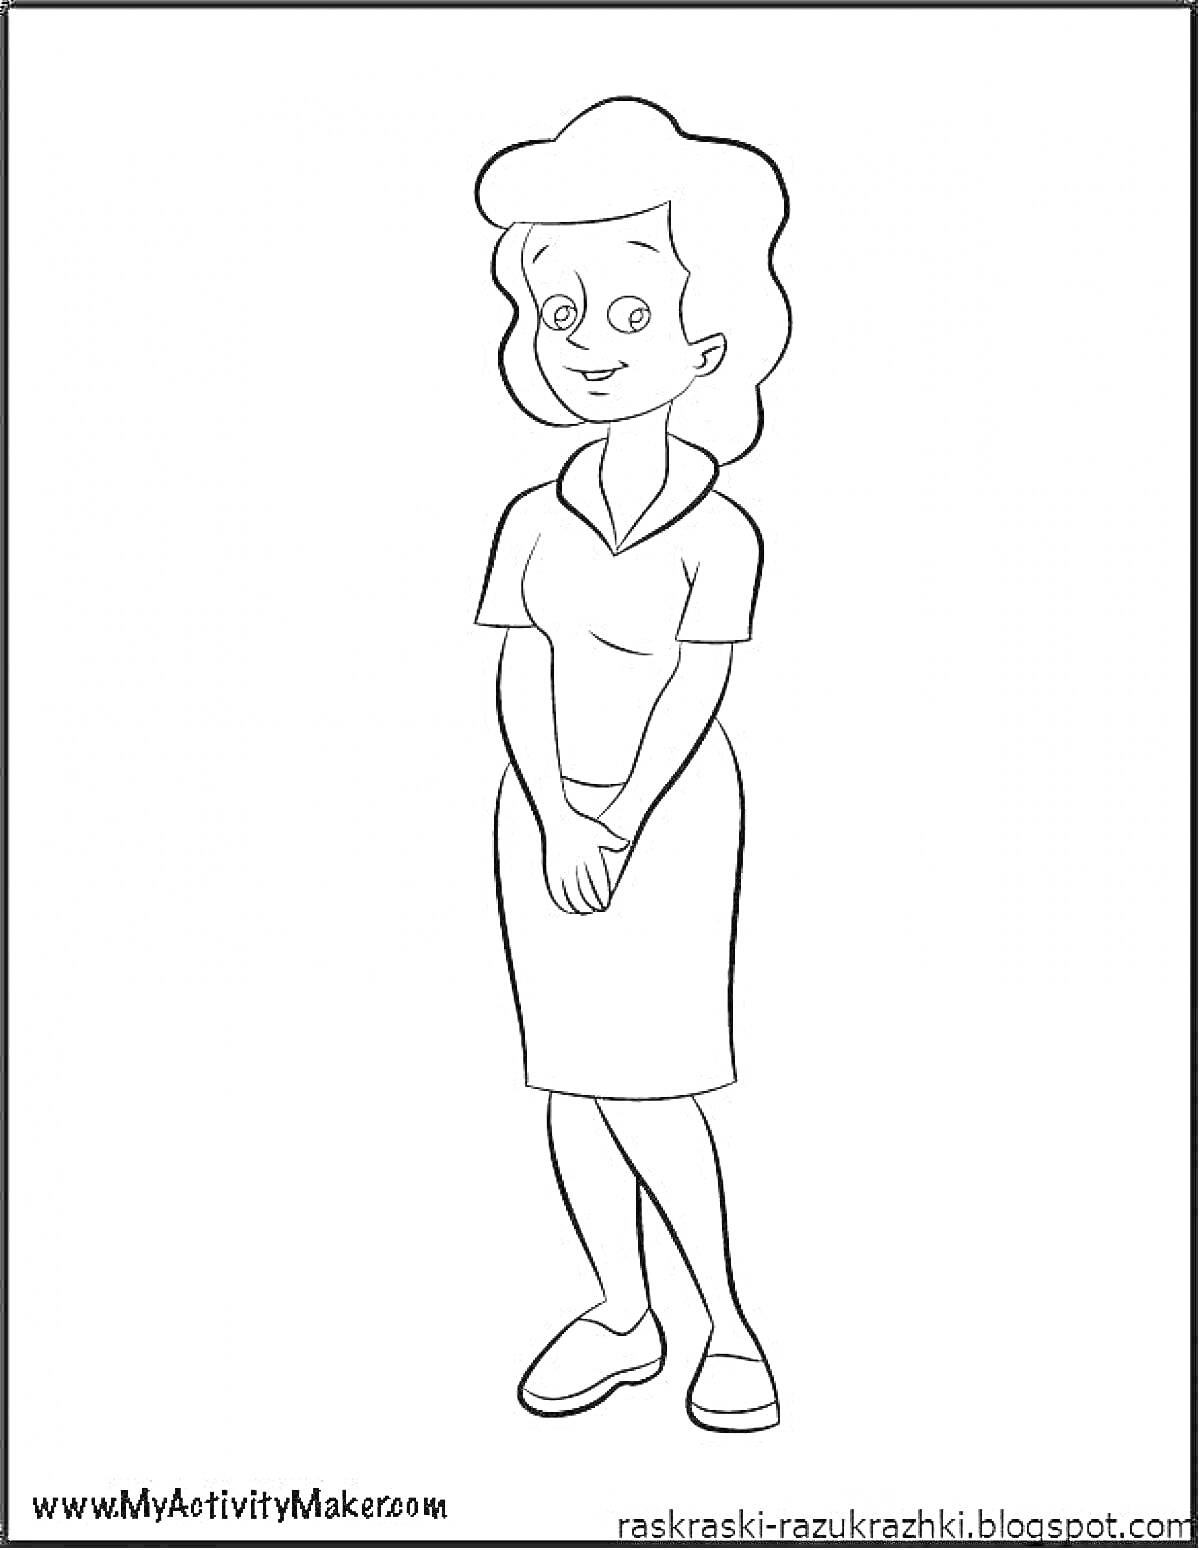 Женщина с короткими волосами в платье со сложенными руками